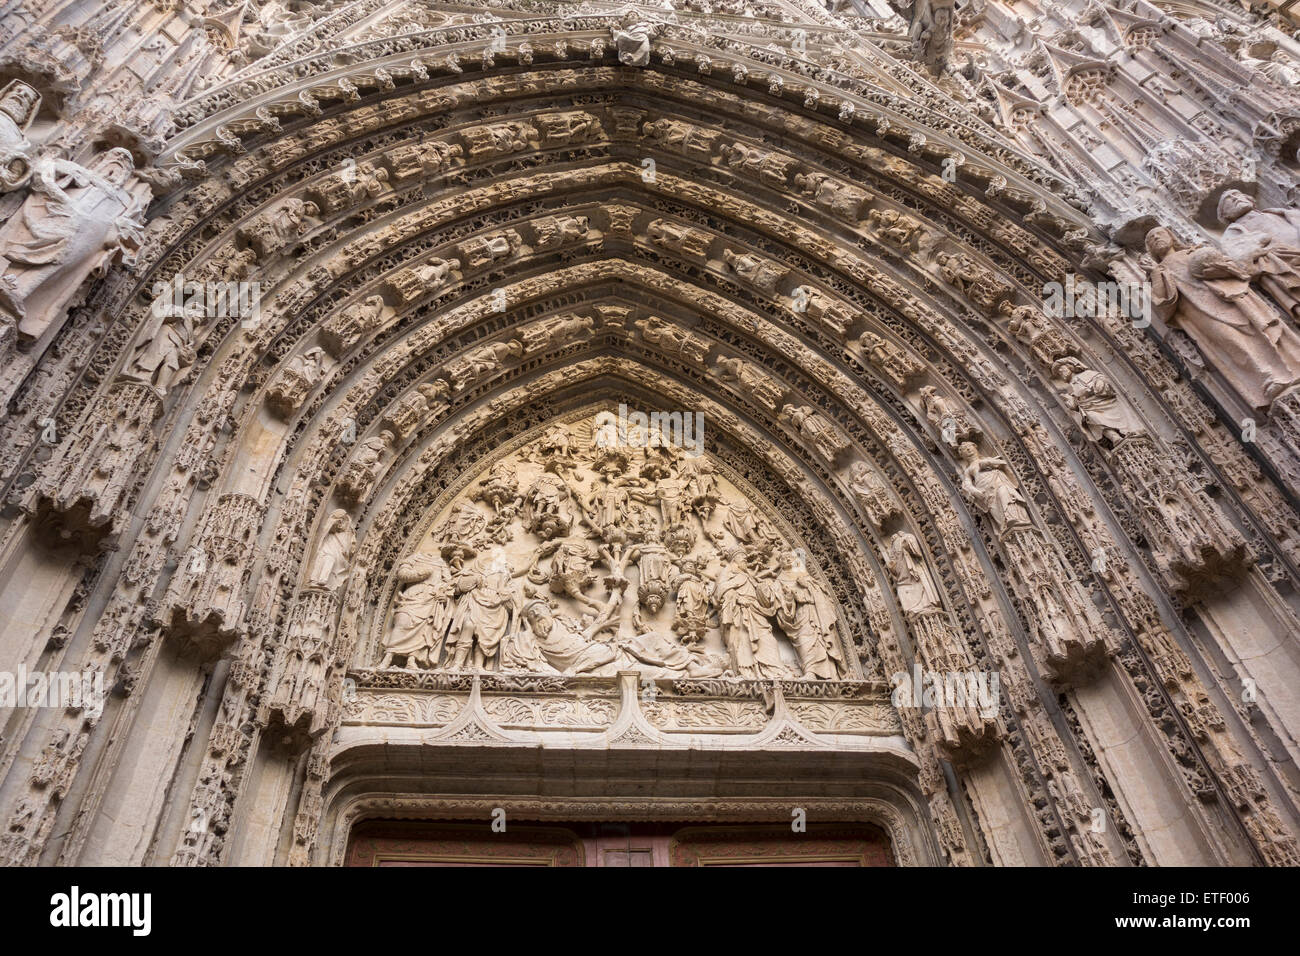 La Cathédrale de Rouen - tympan porte centrale avant l'ouest montrant - Arbre de Jessé (début 17e siècle), Normandie, France Banque D'Images